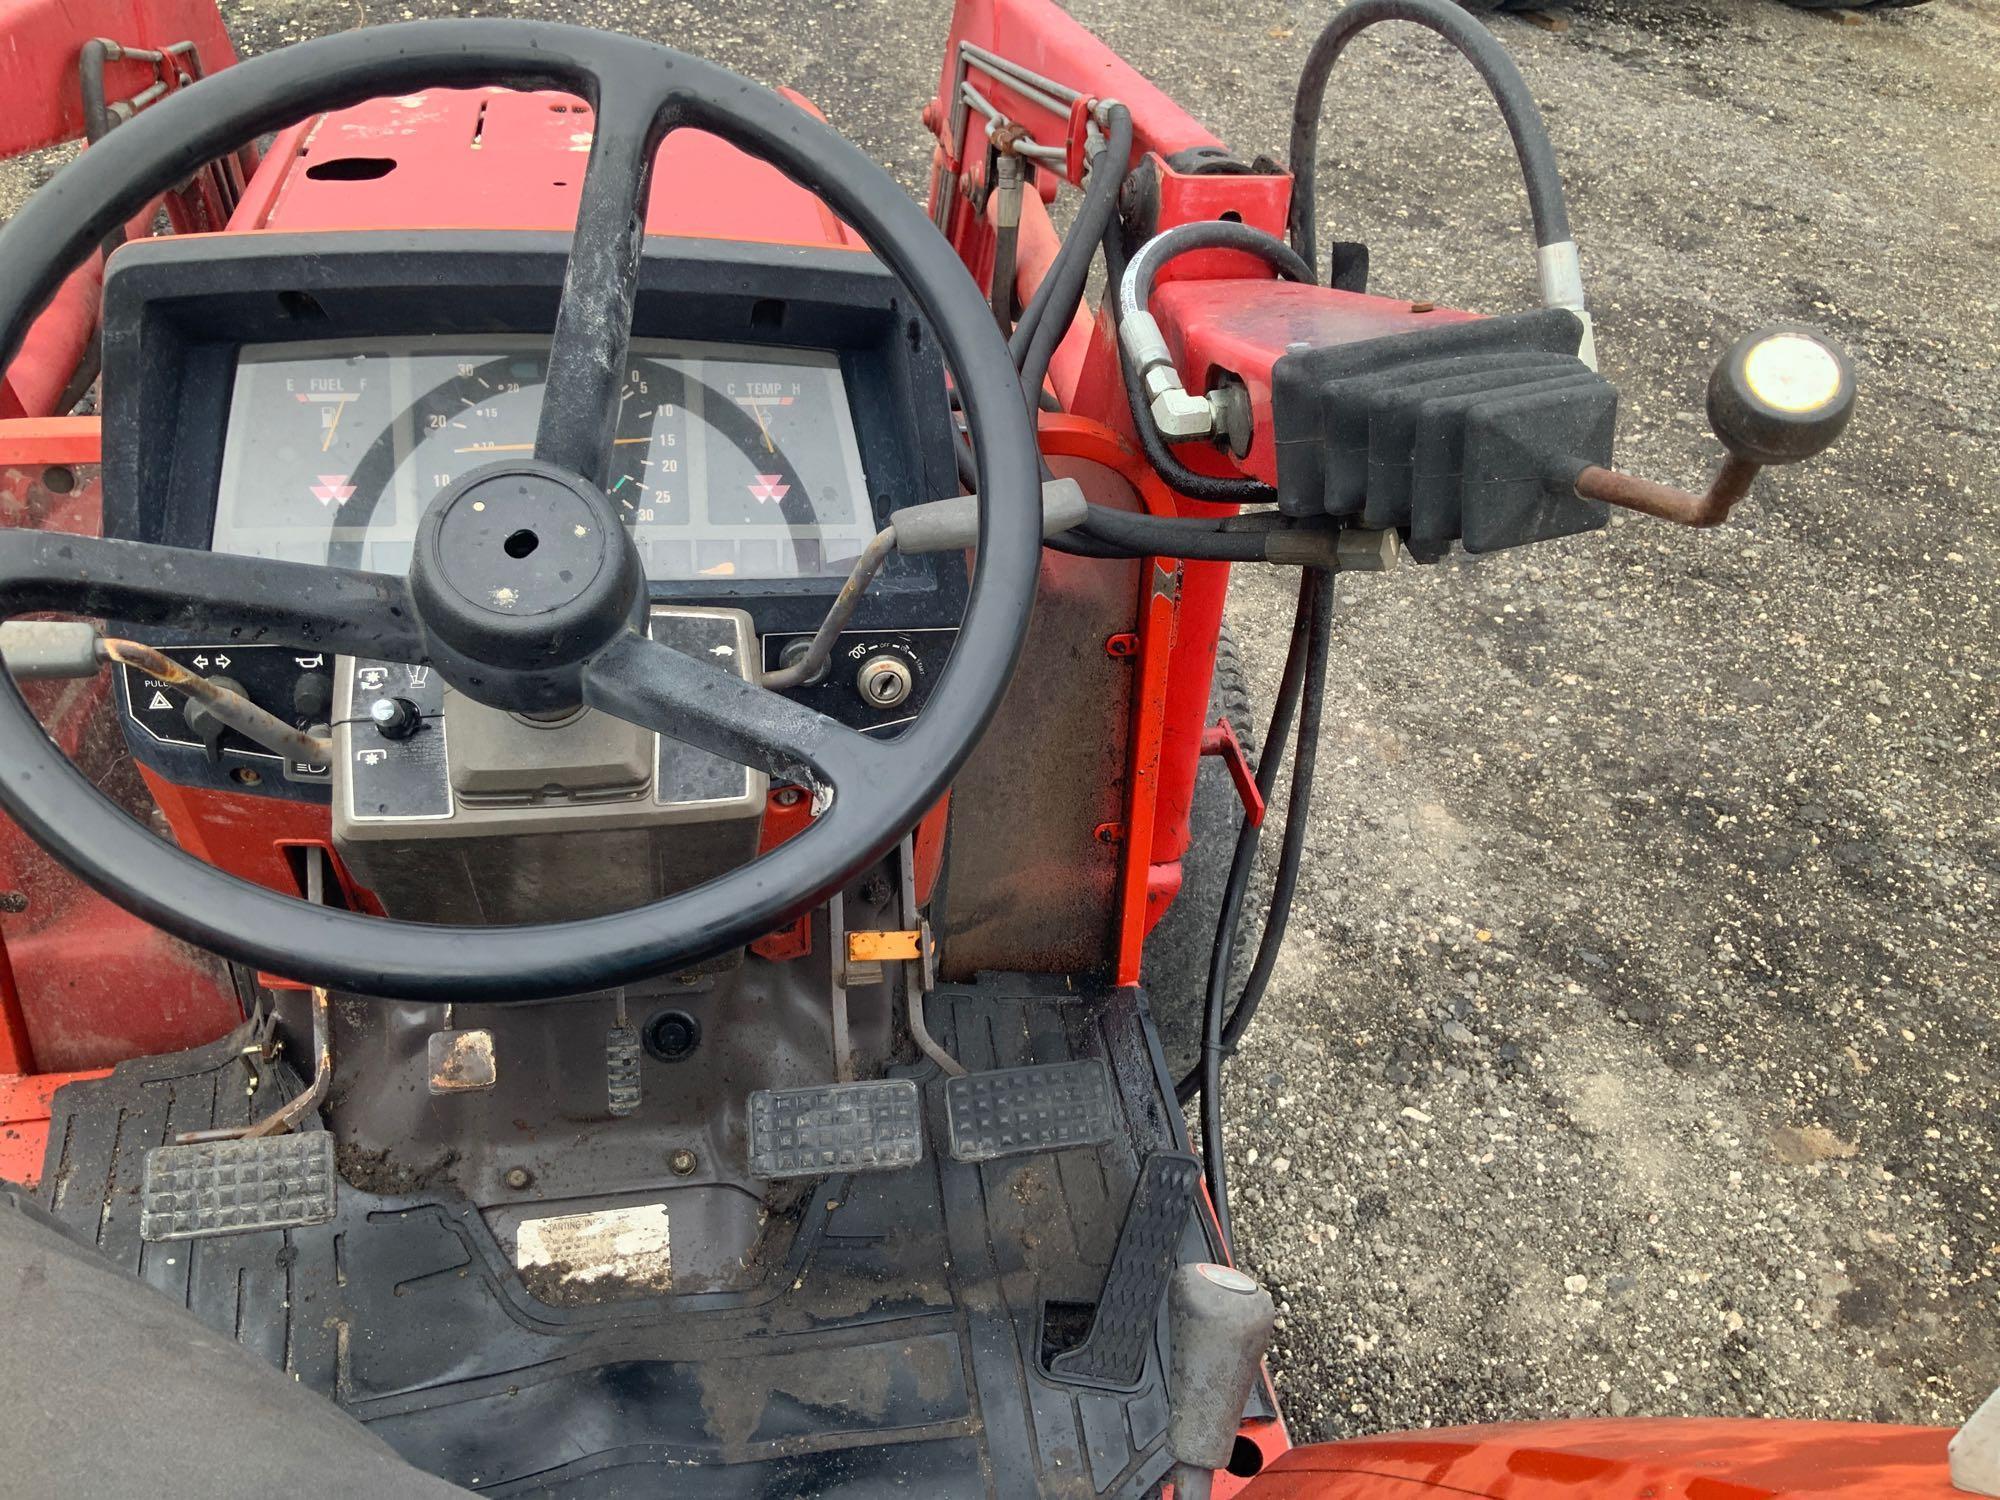 Massey Ferguson MF1250 4WD Loader Backhoe Tractor